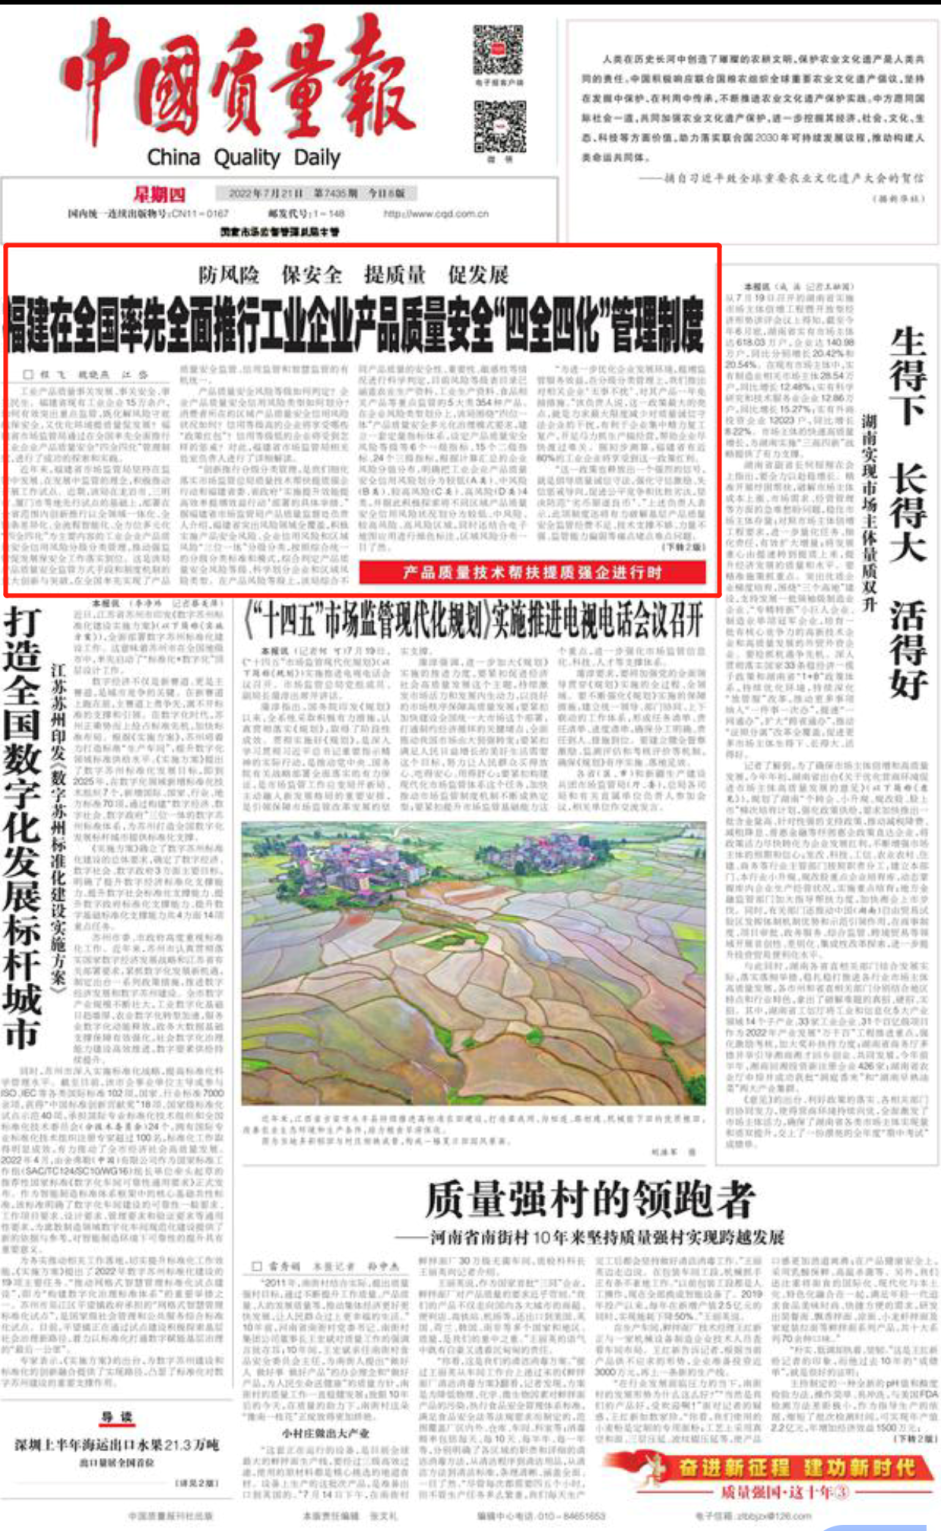 《中国质量报》头版头条点赞福建在全国率先全面推行这项工作